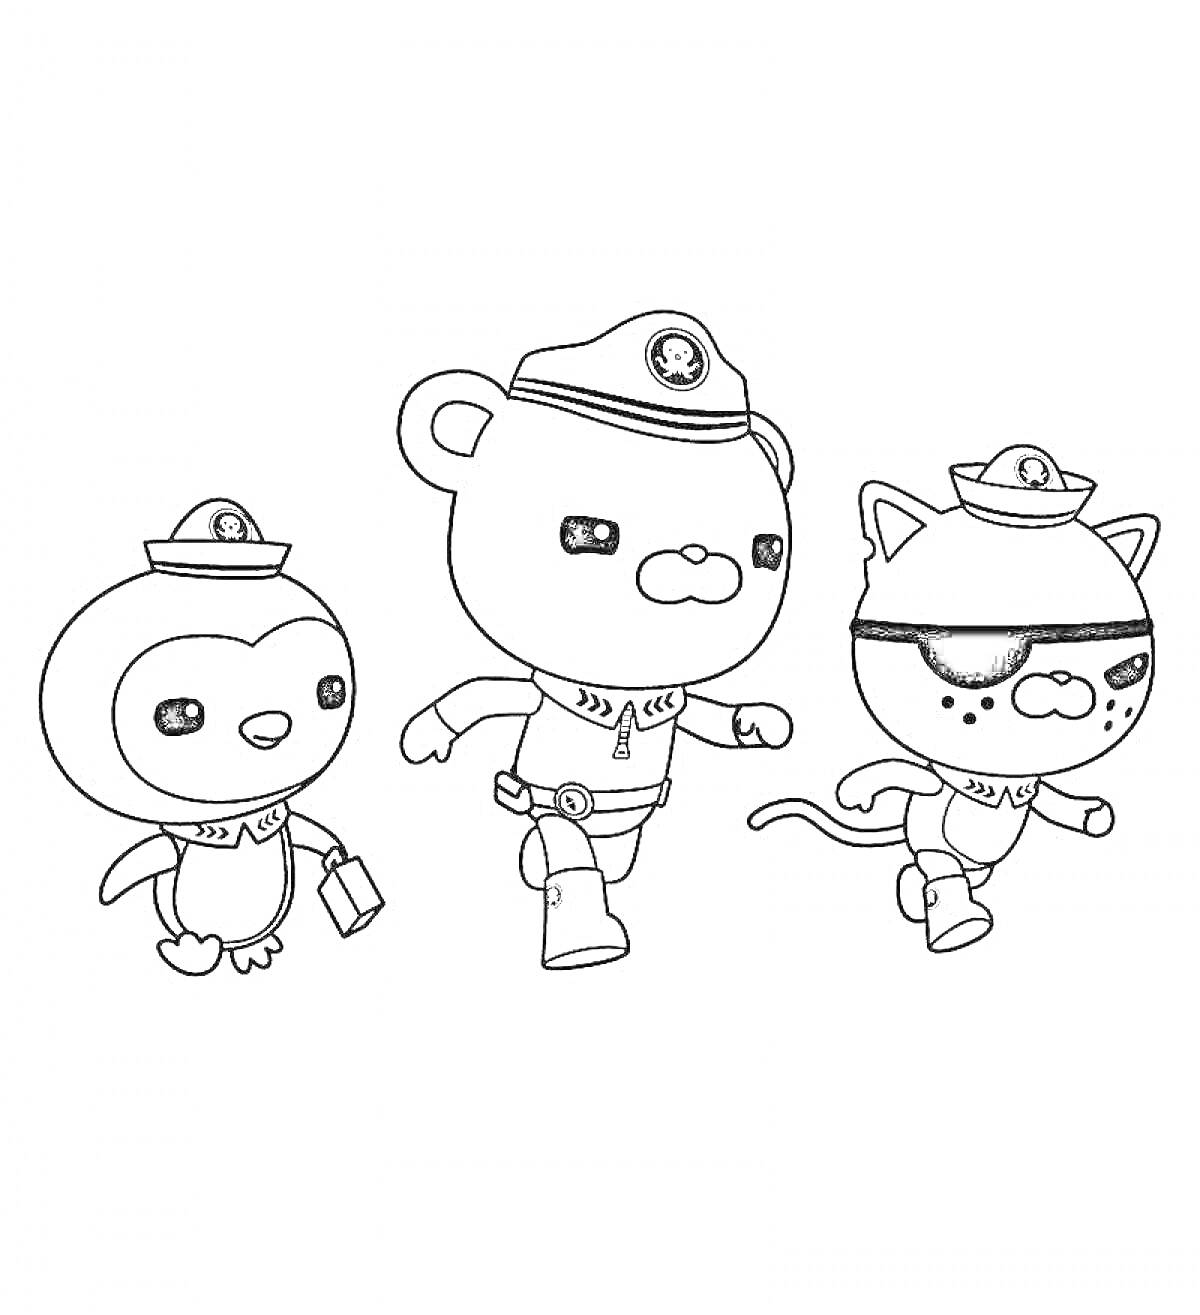 Раскраска три персонажа октонафтов: пингвин, медведь и кошка с повязкой на глазу, бегущие вперёд